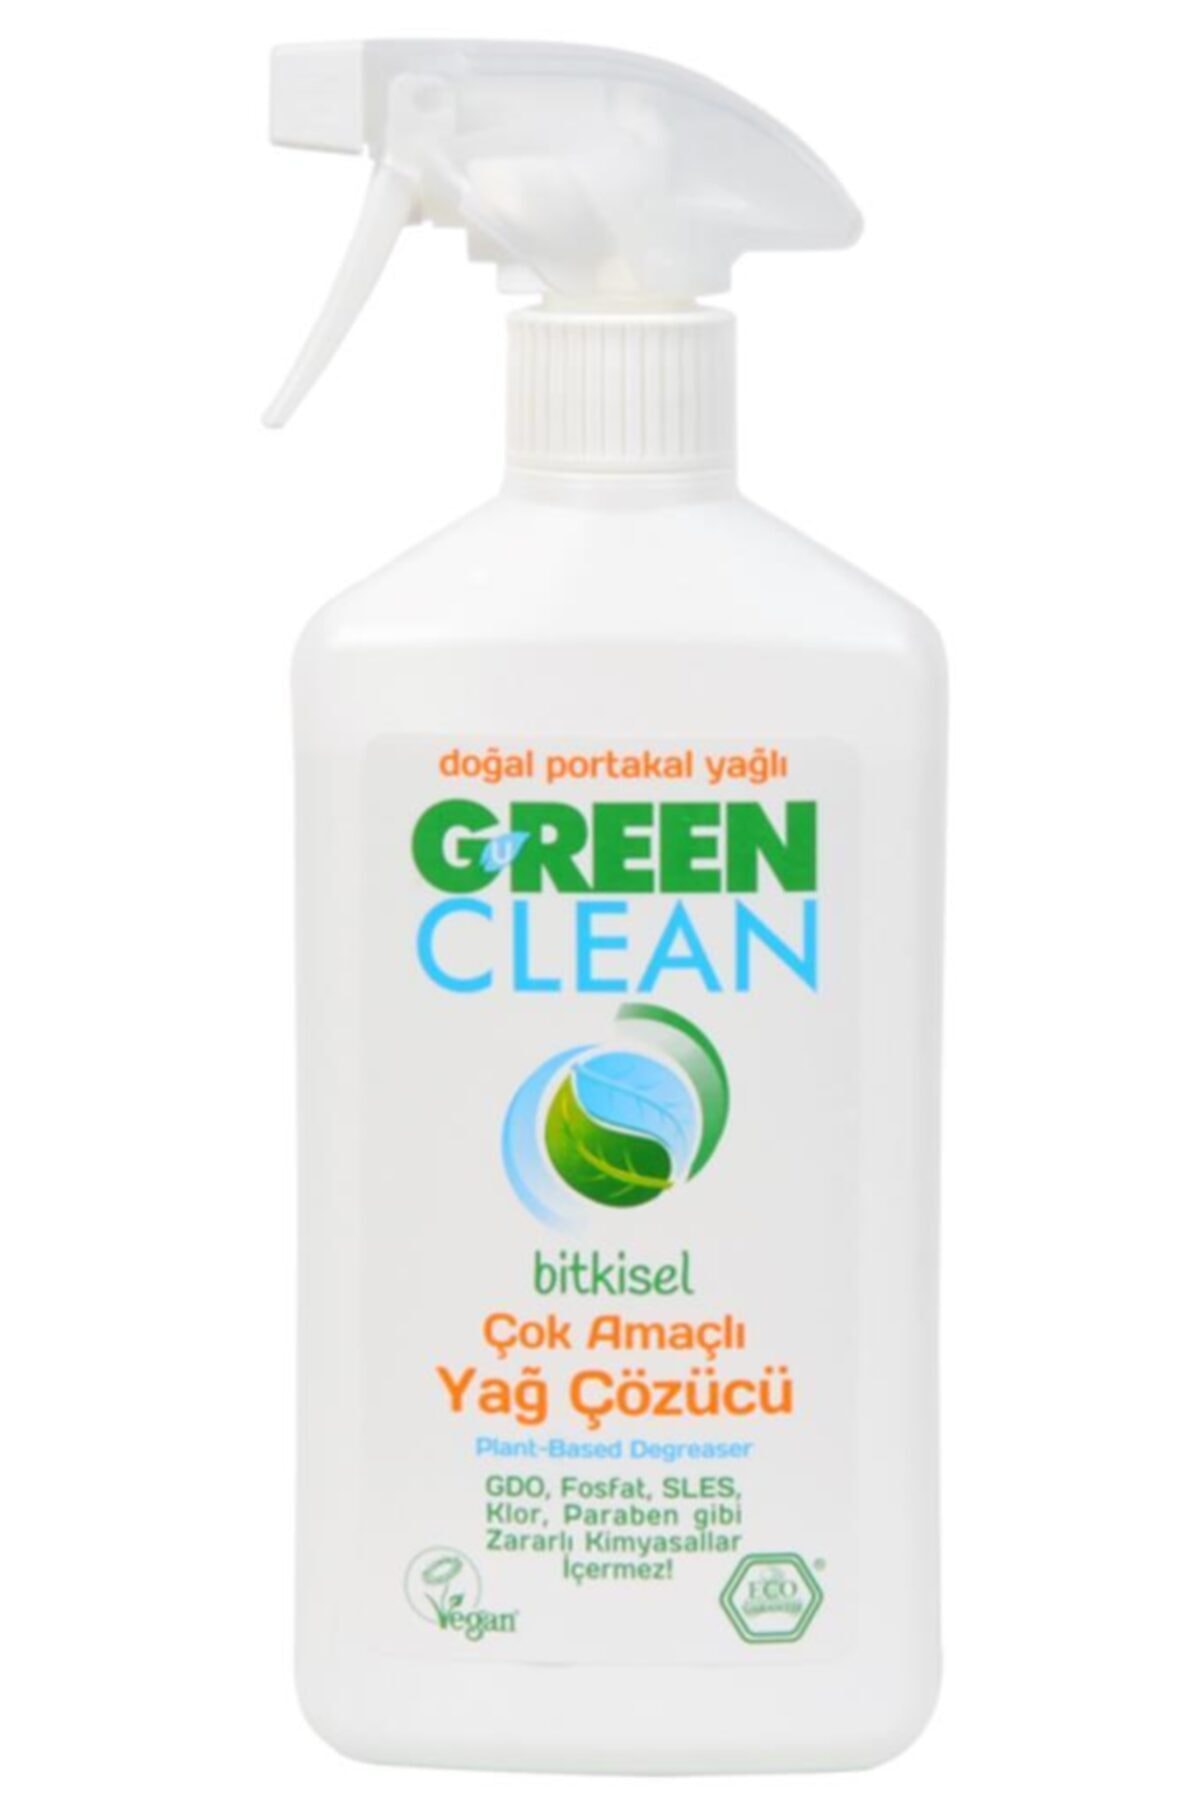 Green Clean Organik Portakal Yağlı Çok Amaçlı Yağ Çözücü 500 ml